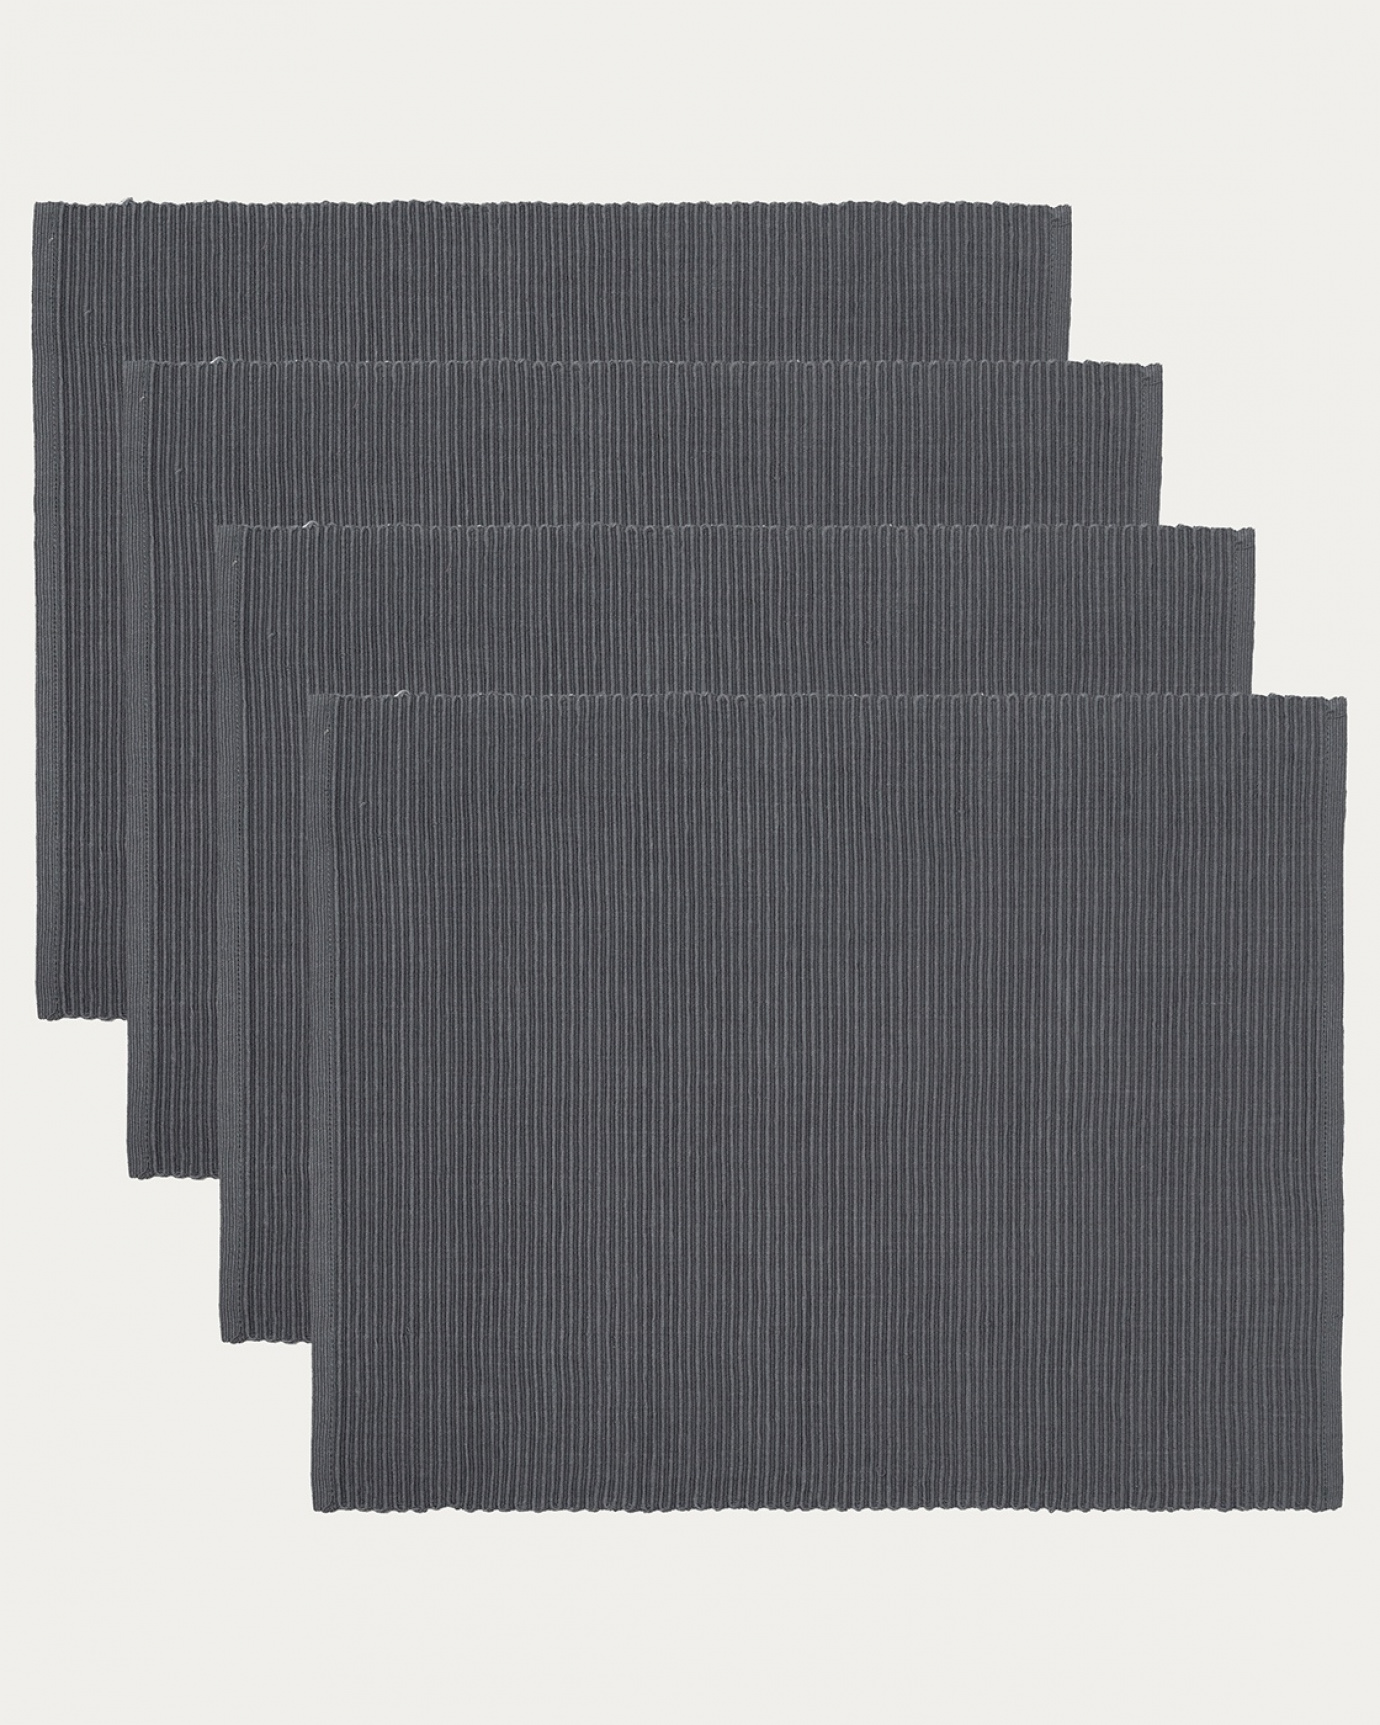 Produktbild granitgrau UNI Tischset aus weicher Baumwolle in Rippenqualität von LINUM DESIGN. Größe 35x46 cm und in 4er-Pack verkauft.